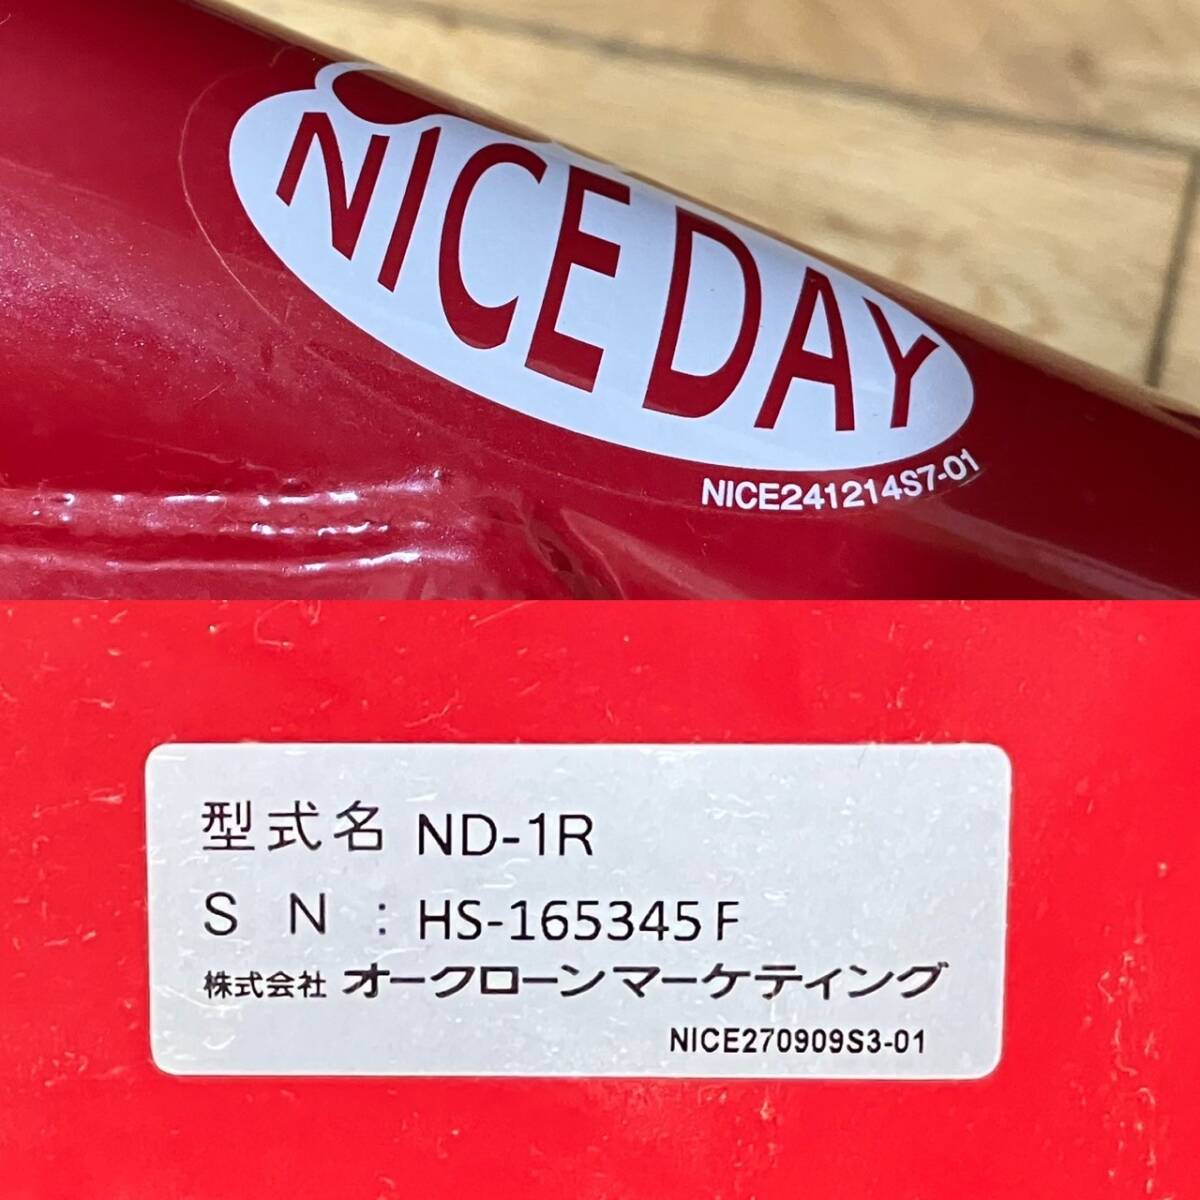 4923-1A NICEDAY ナイスデイ 健康ステッパー ND-1R NICE241214S7-01 赤 レッド 踏み台 運動 室内エクササイズ 有酸素運動の画像8